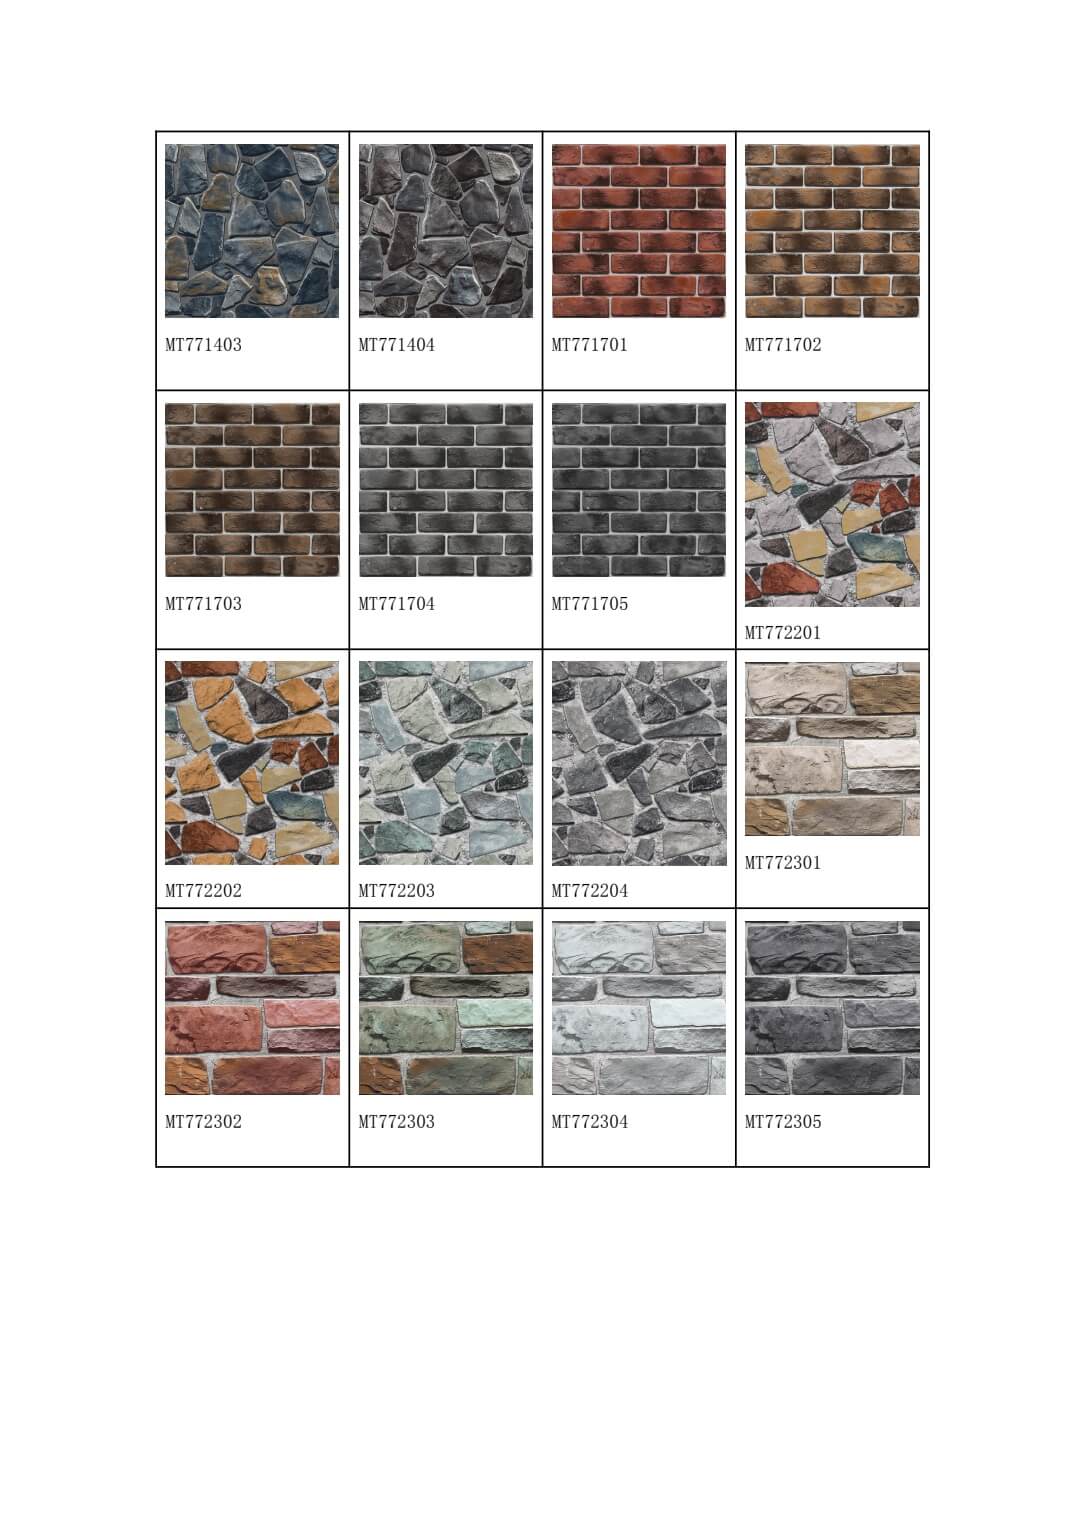 3D Brick Designs Wallpaper (3)